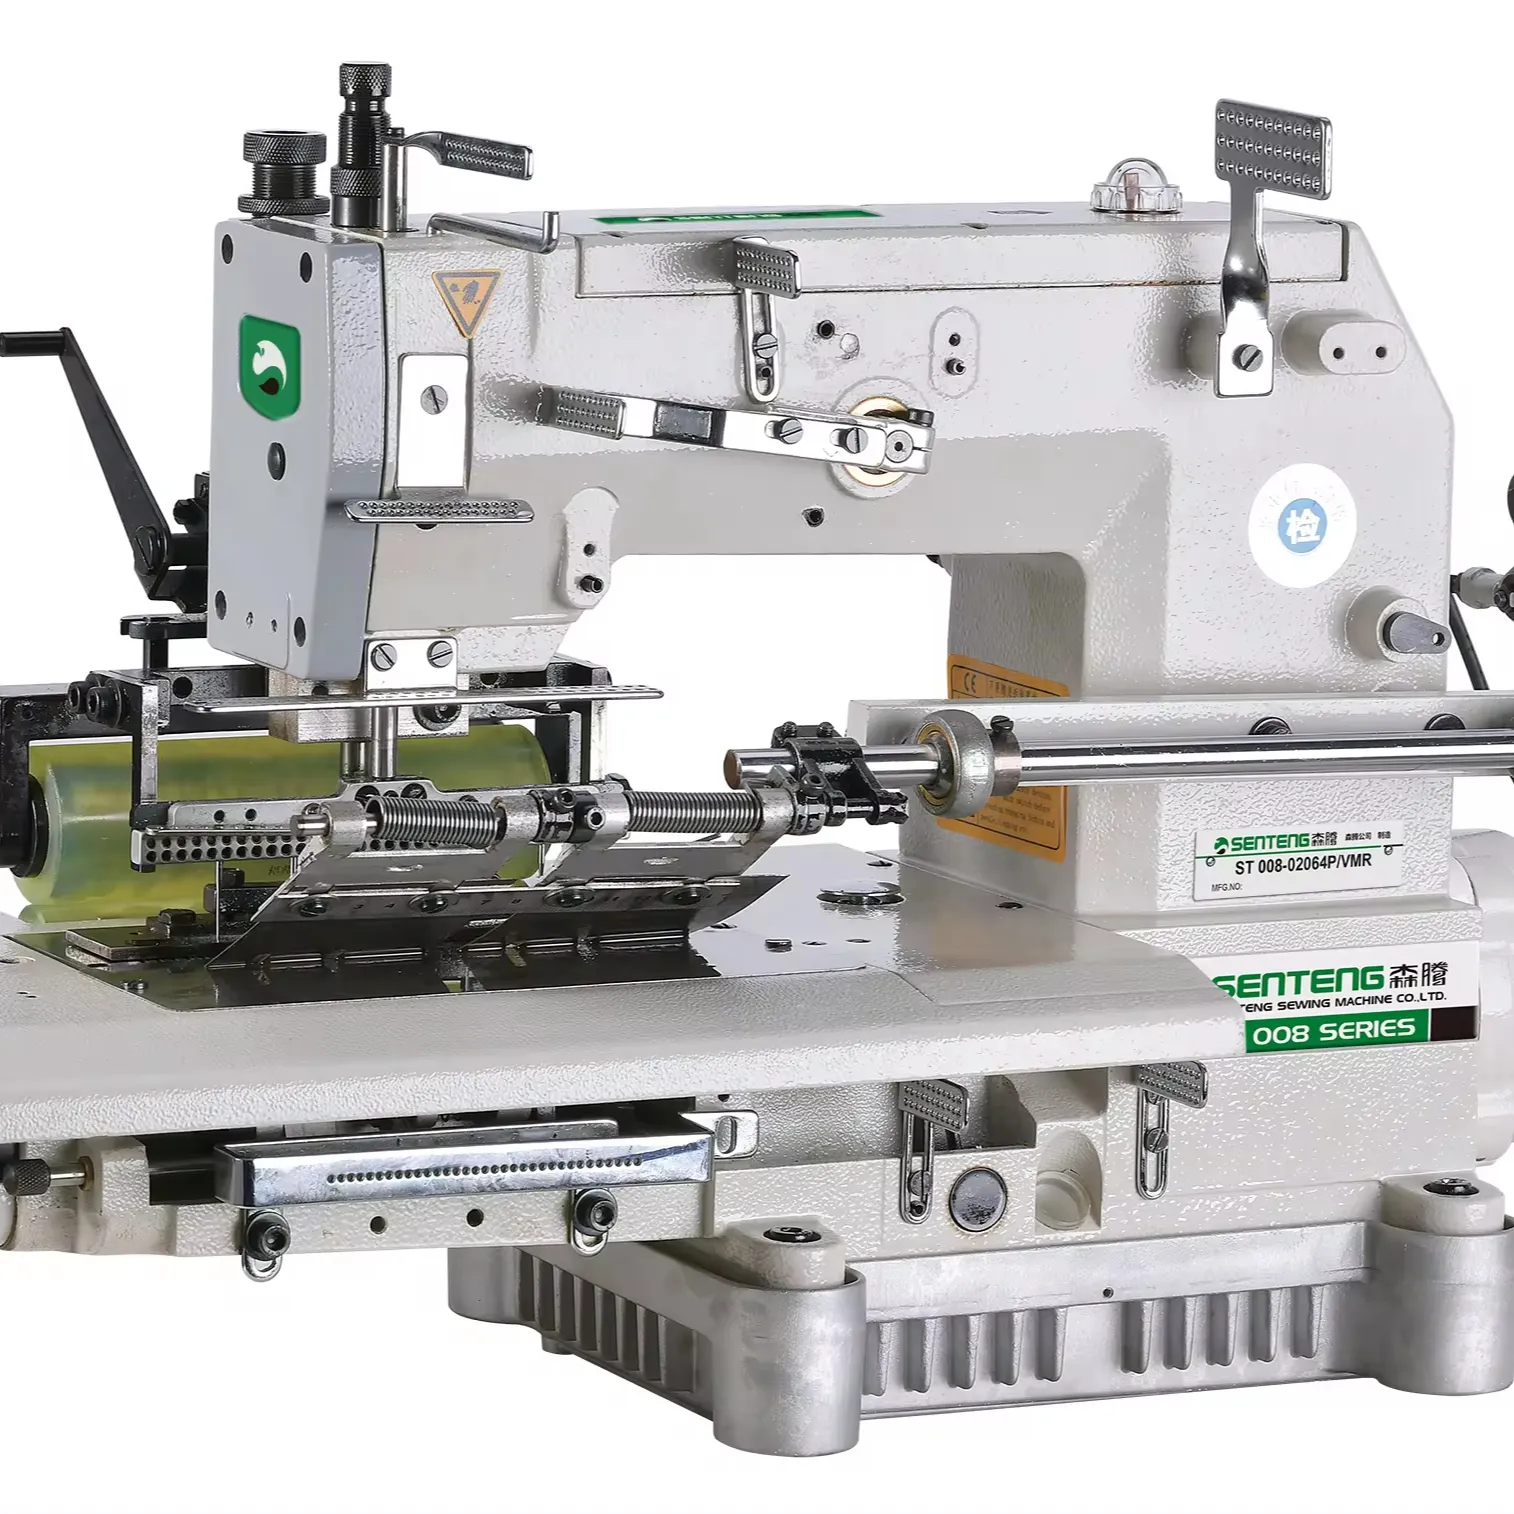 ماكينة خياطة ST- 008-02064P/VMR صناعية تطبيق أنماط مختلفة لطي الملابس والستائر الراقية